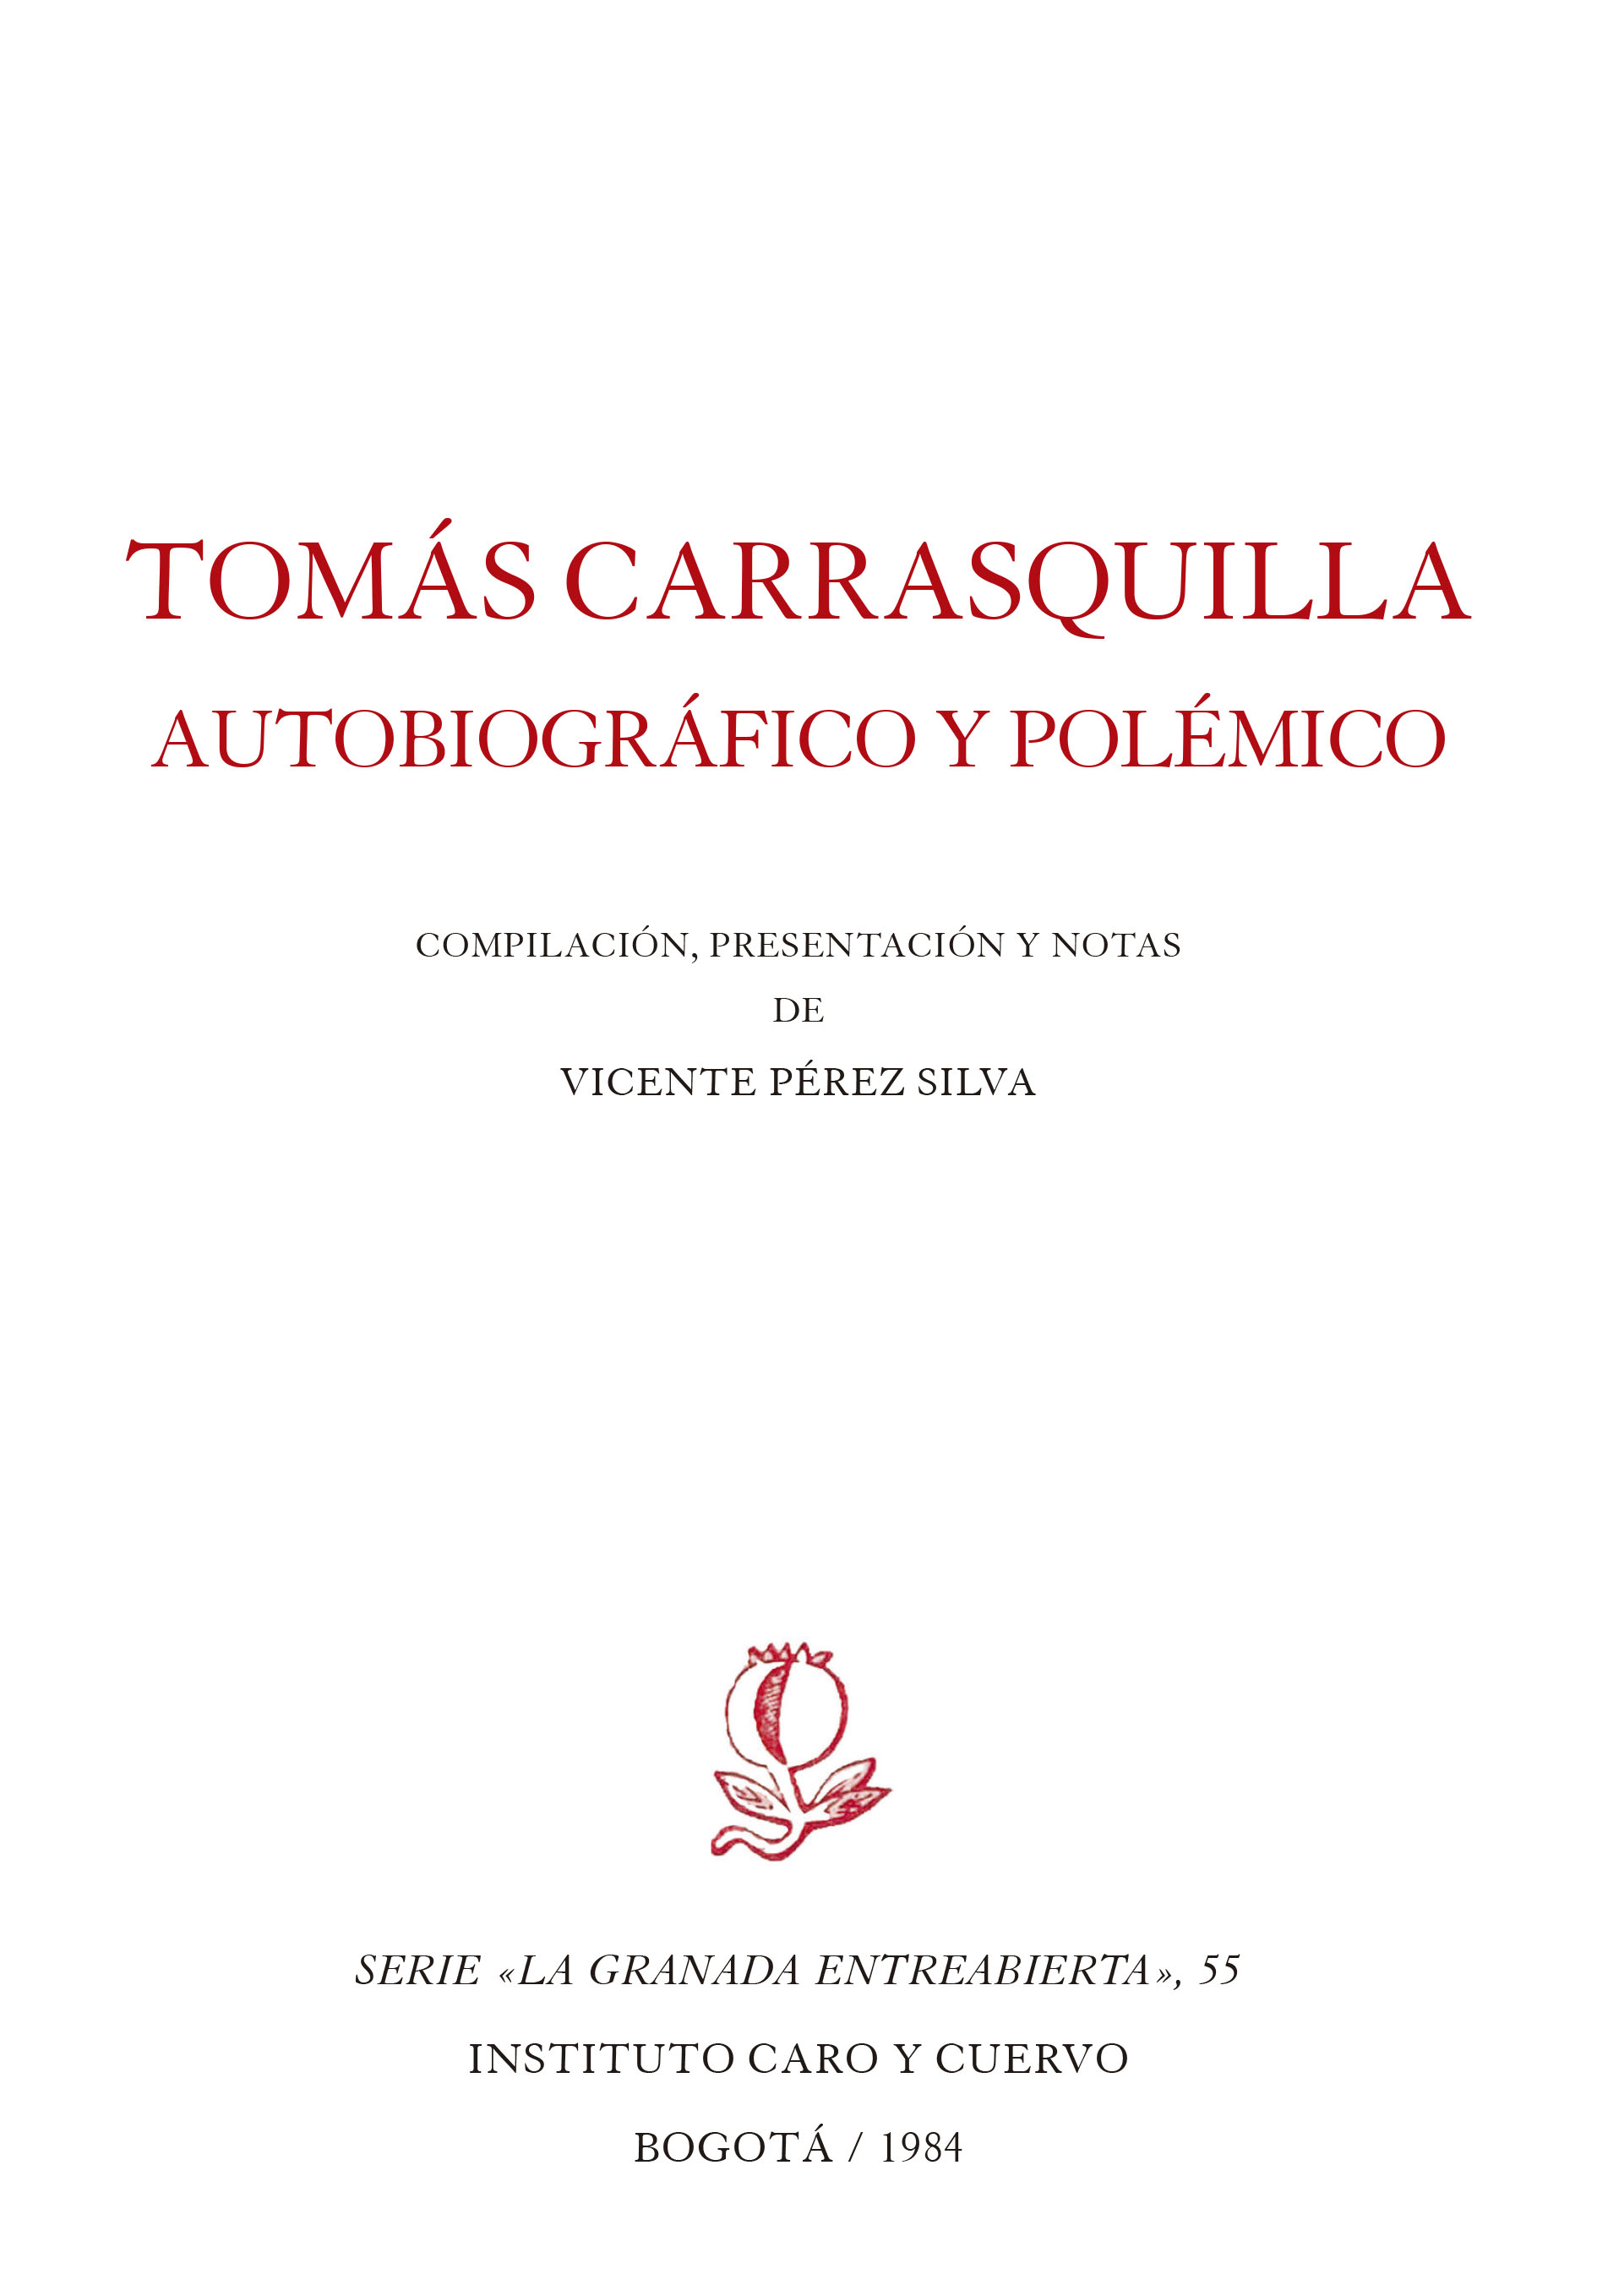 Tomás Carrasquilla, autobiográfico y polémico